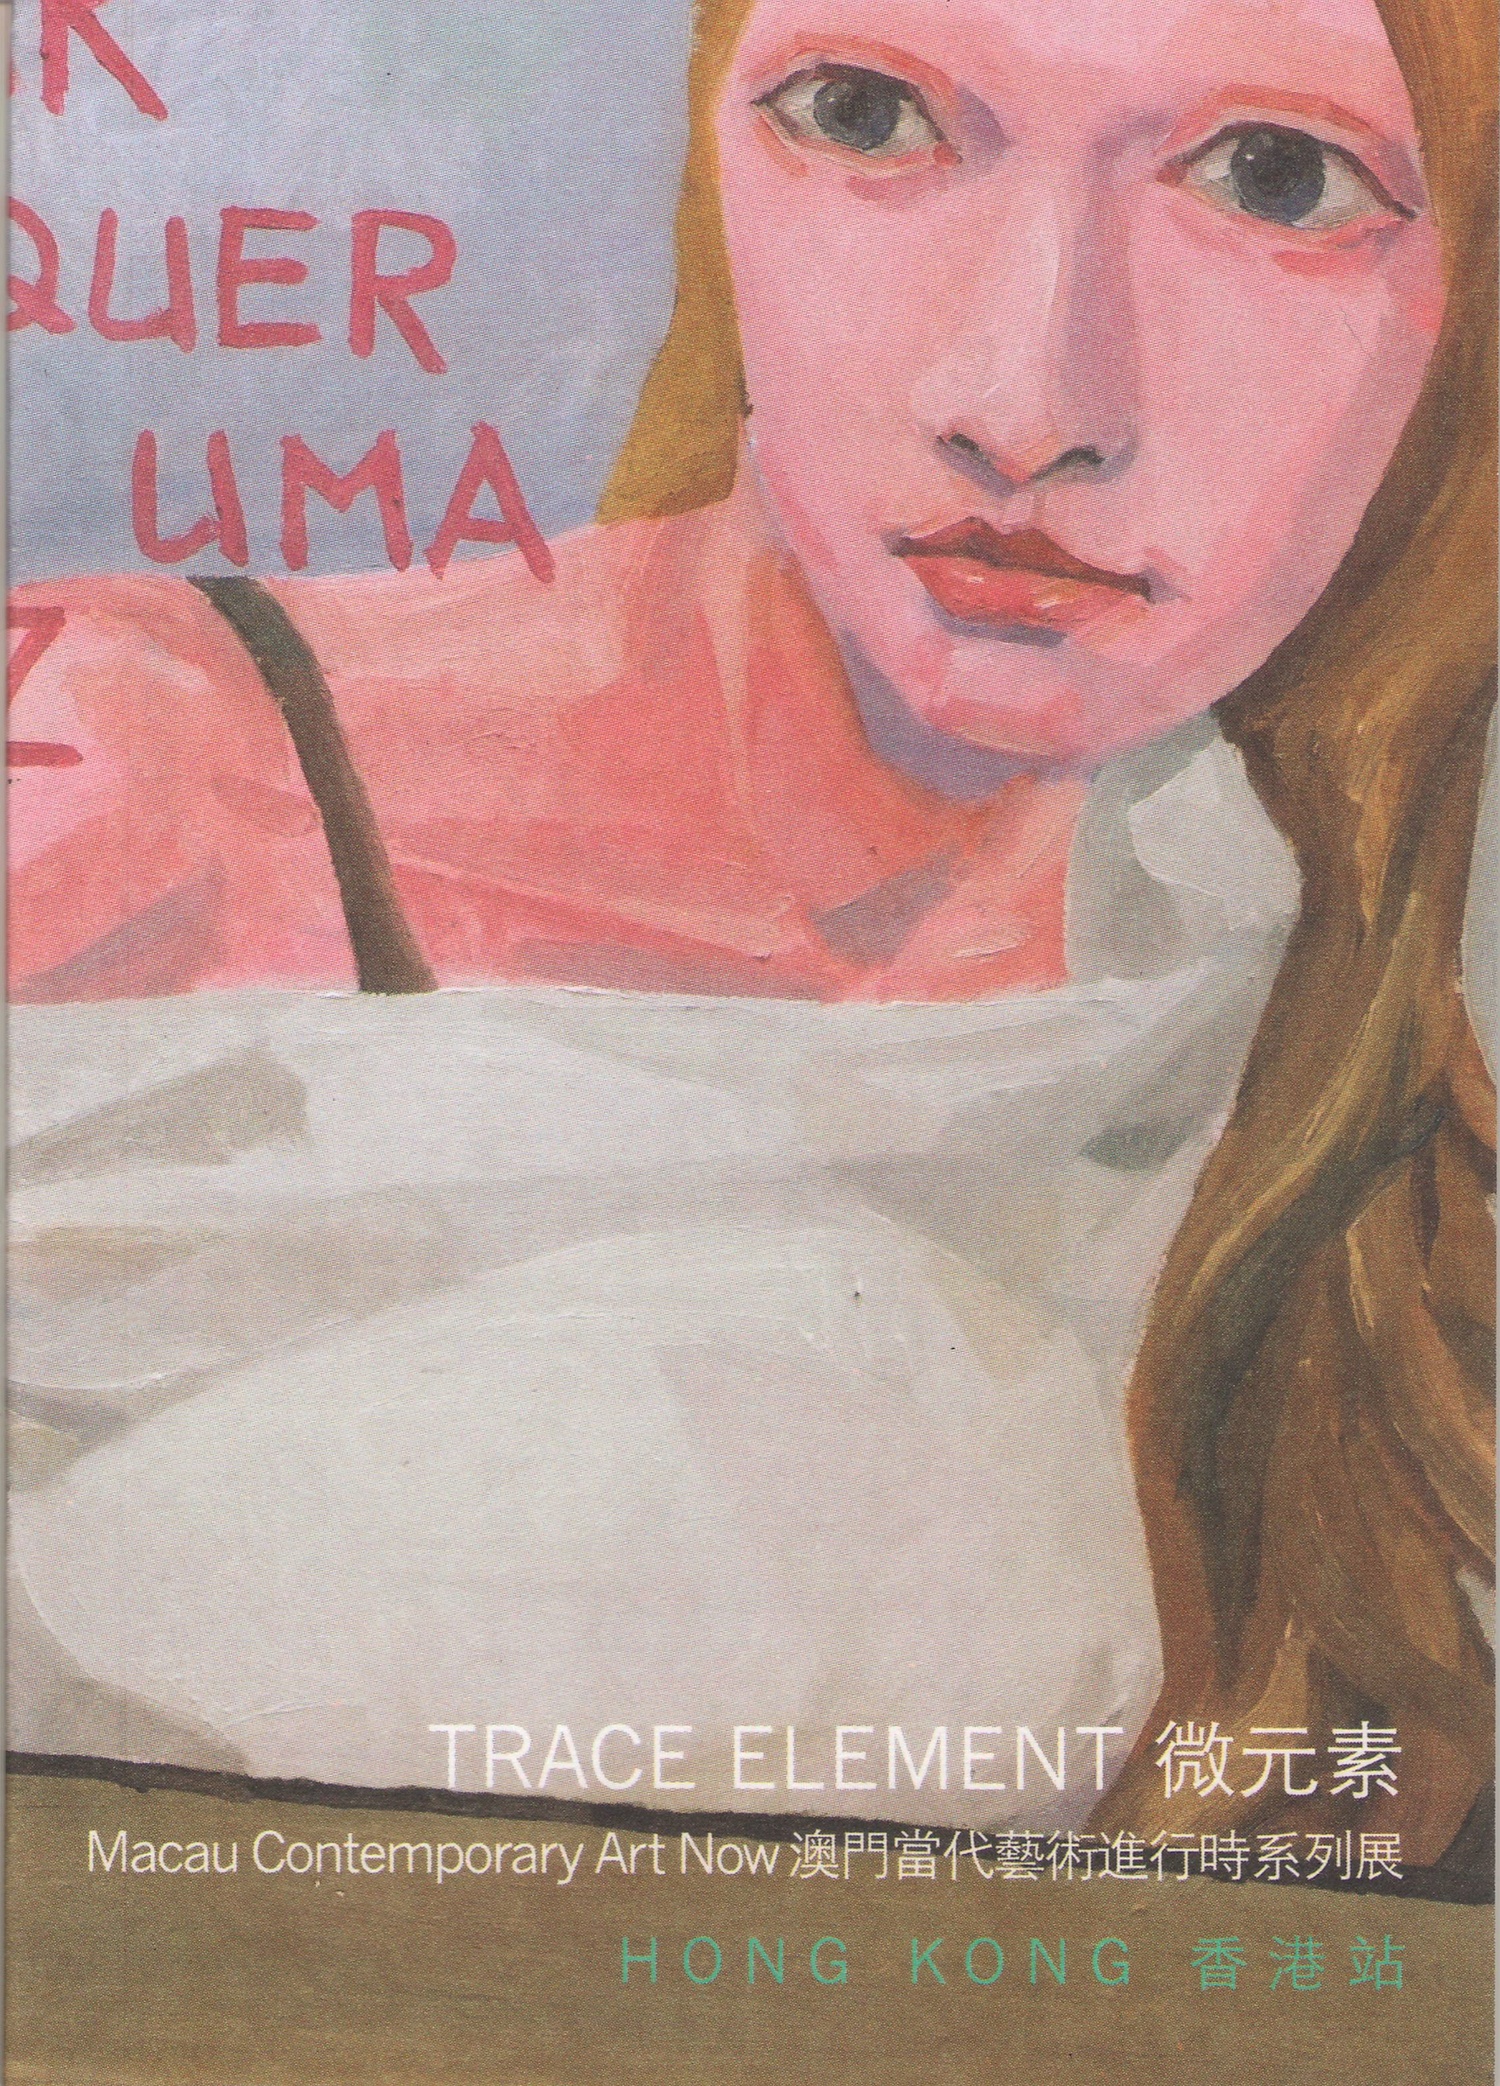 Trace Element - Macau Contemporary Art Now, Hong Kong